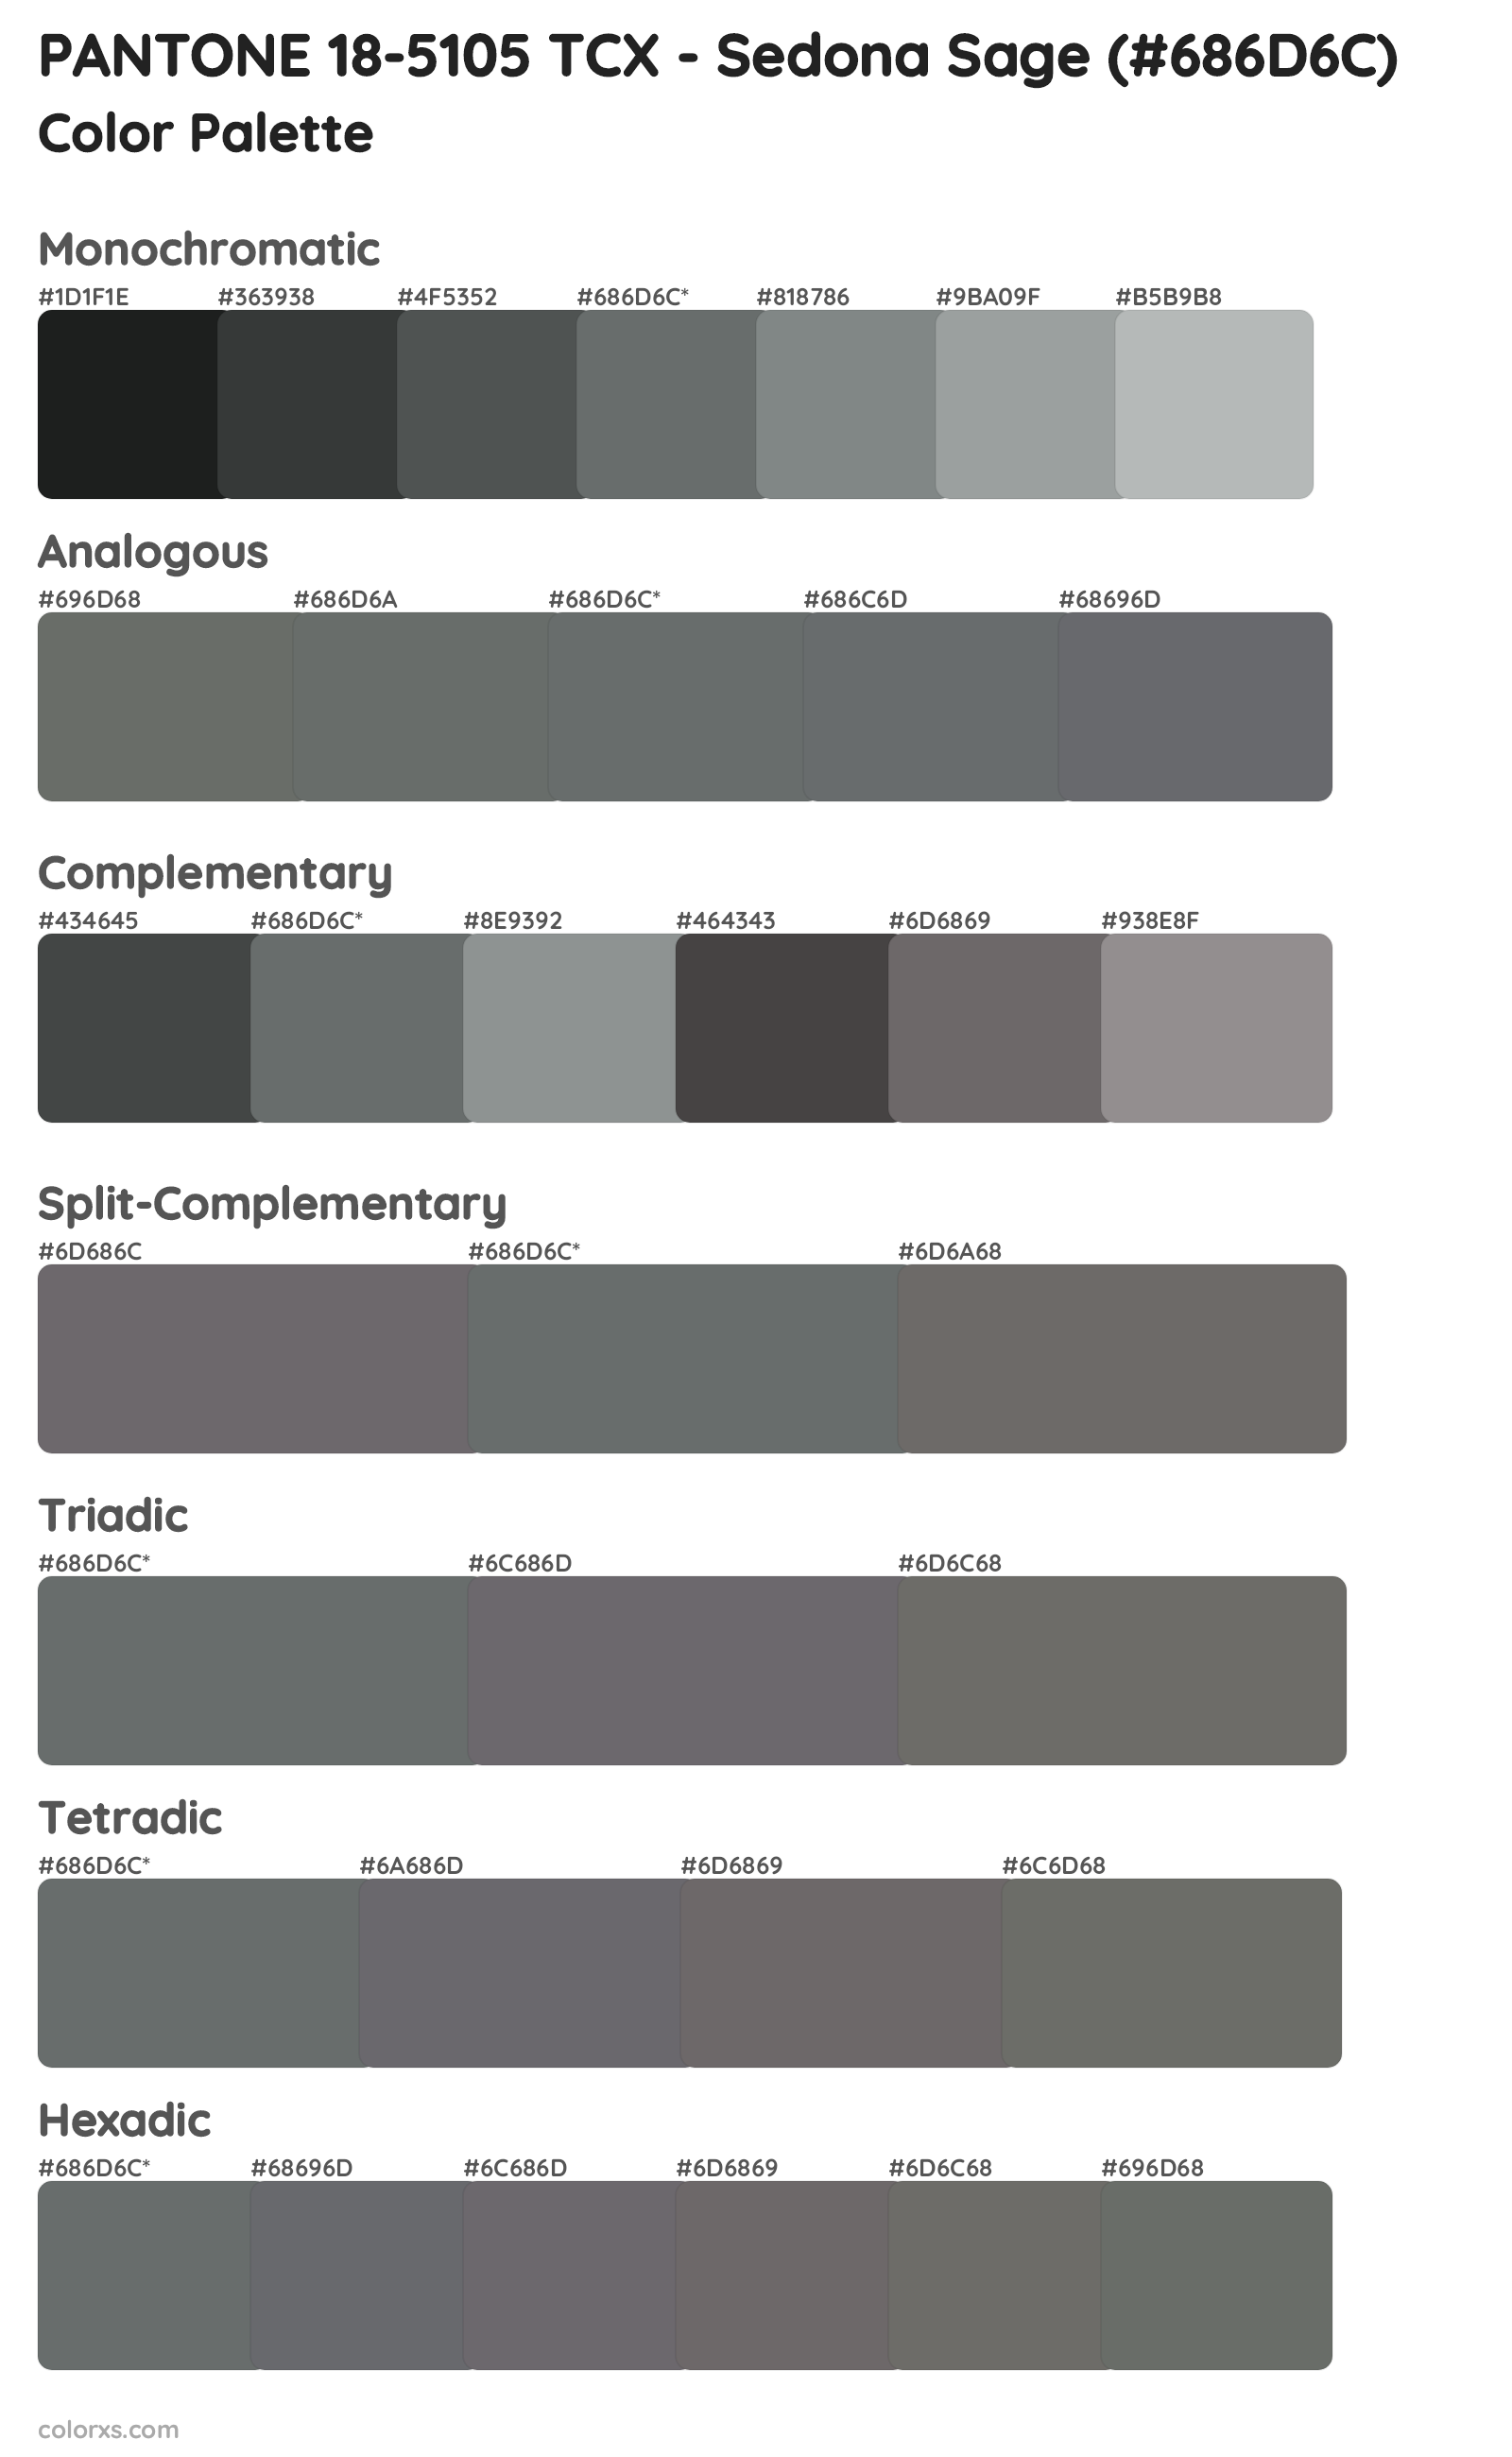 PANTONE 18-5105 TCX - Sedona Sage Color Scheme Palettes